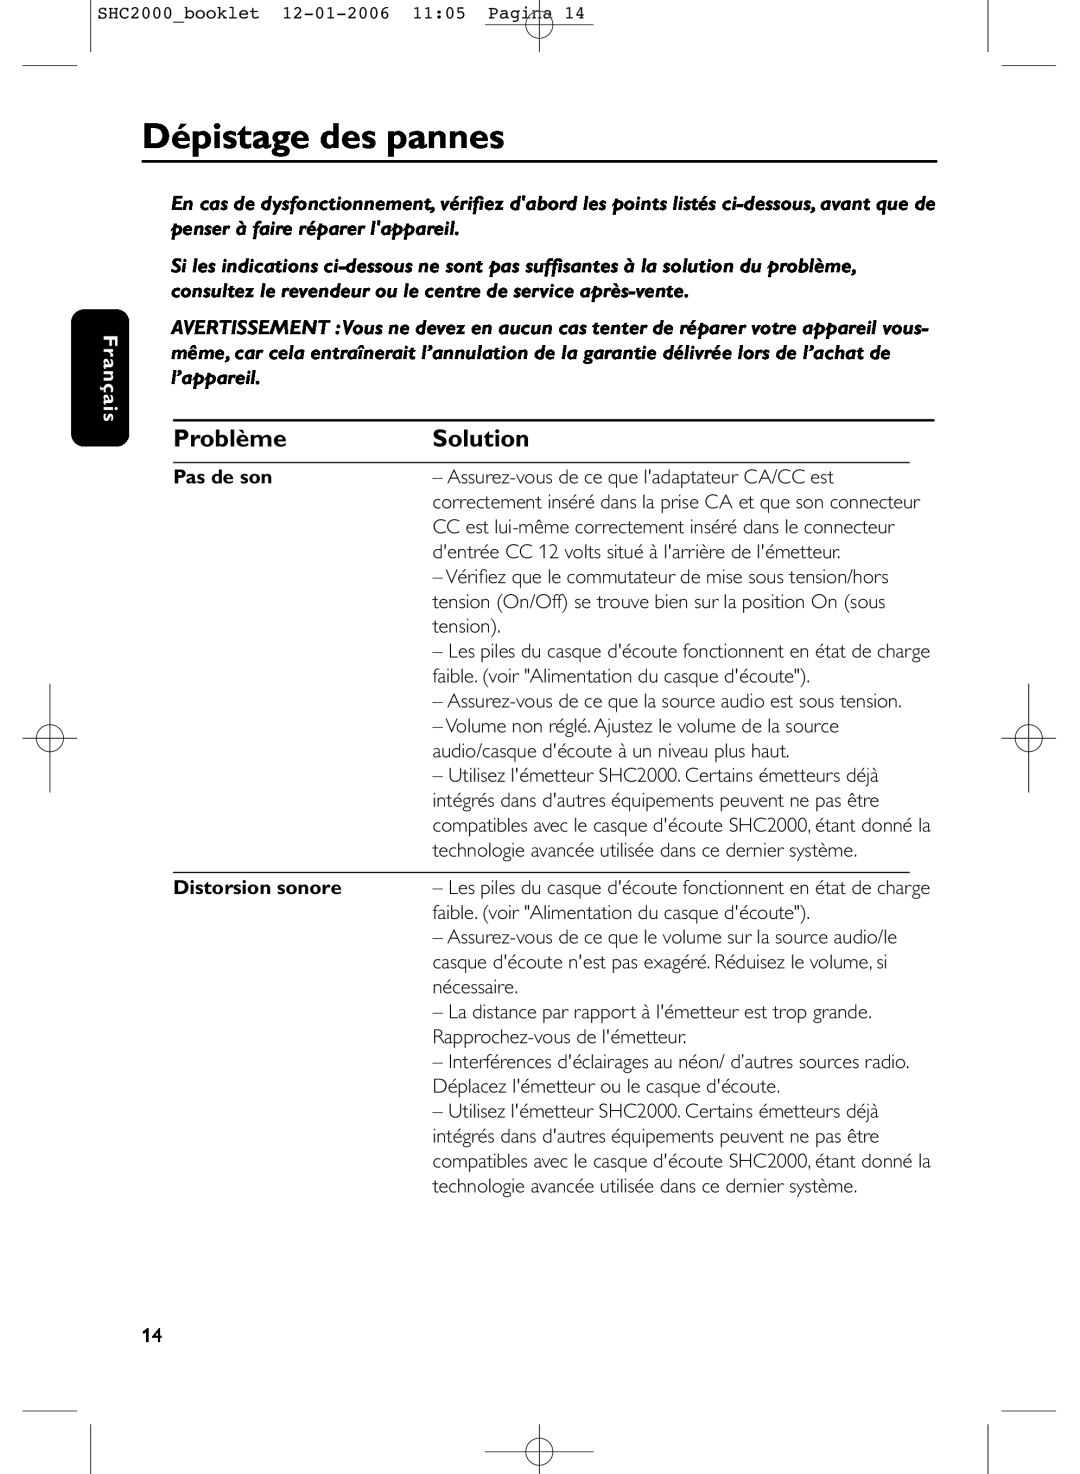 Philips SHC2000 manual Dépistage des pannes, Problème, Solution, Français, Pas de son, Distorsion sonore 